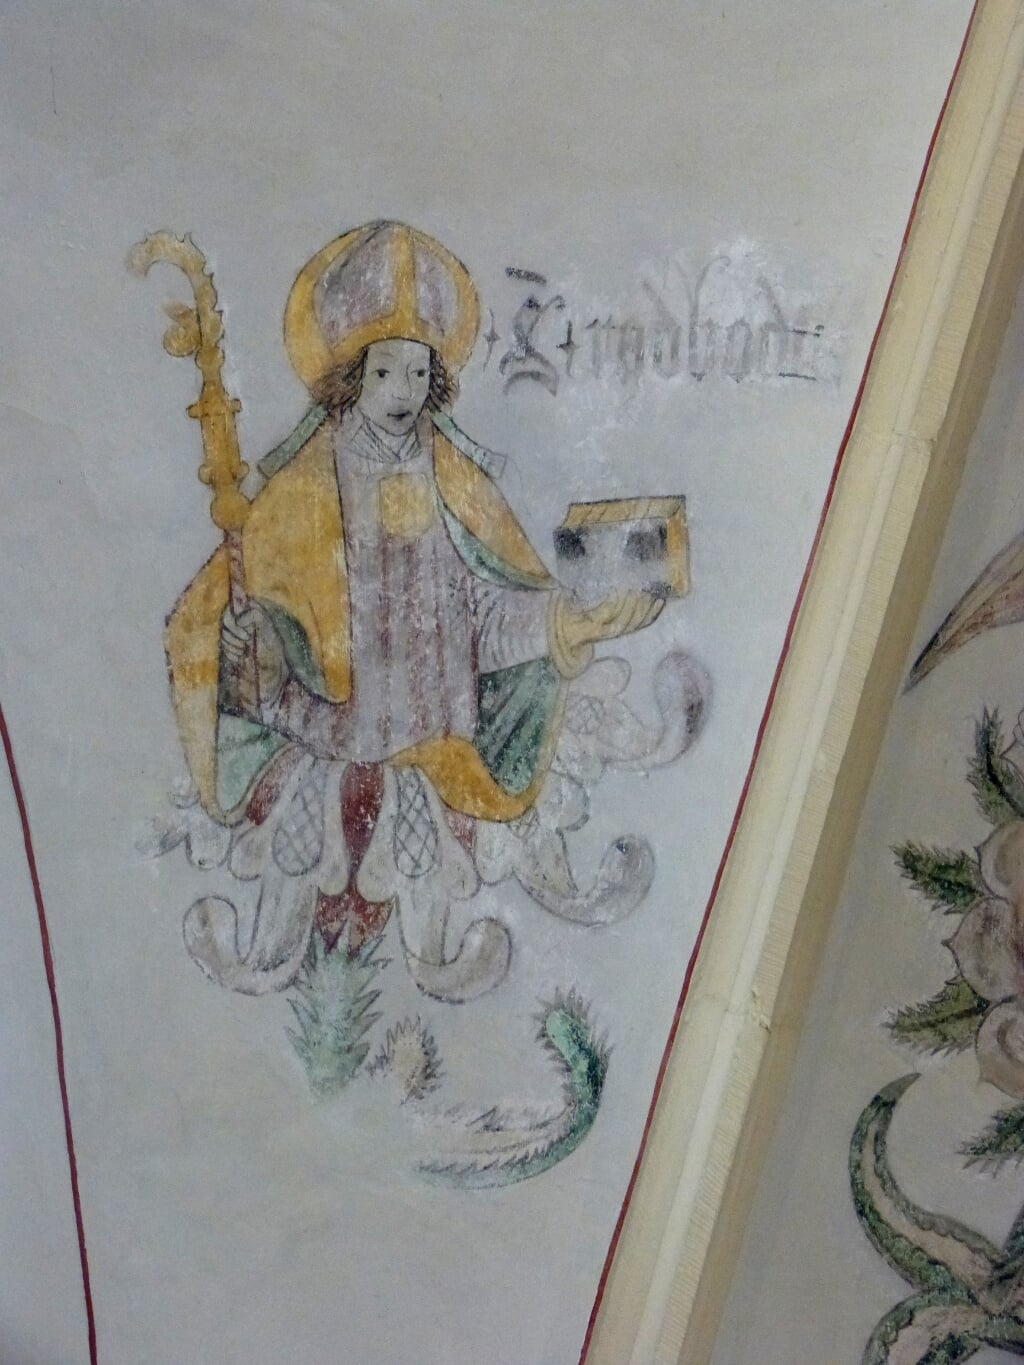 Bisschop Radboud, die in het Latijn over de zwaluw dichtte, op een muurschildering in de voormalige Broerenkerk in Zwolle, waarin nu boekhandel Waanders is gevestigd. Foto: Dries van den Akker s.j.